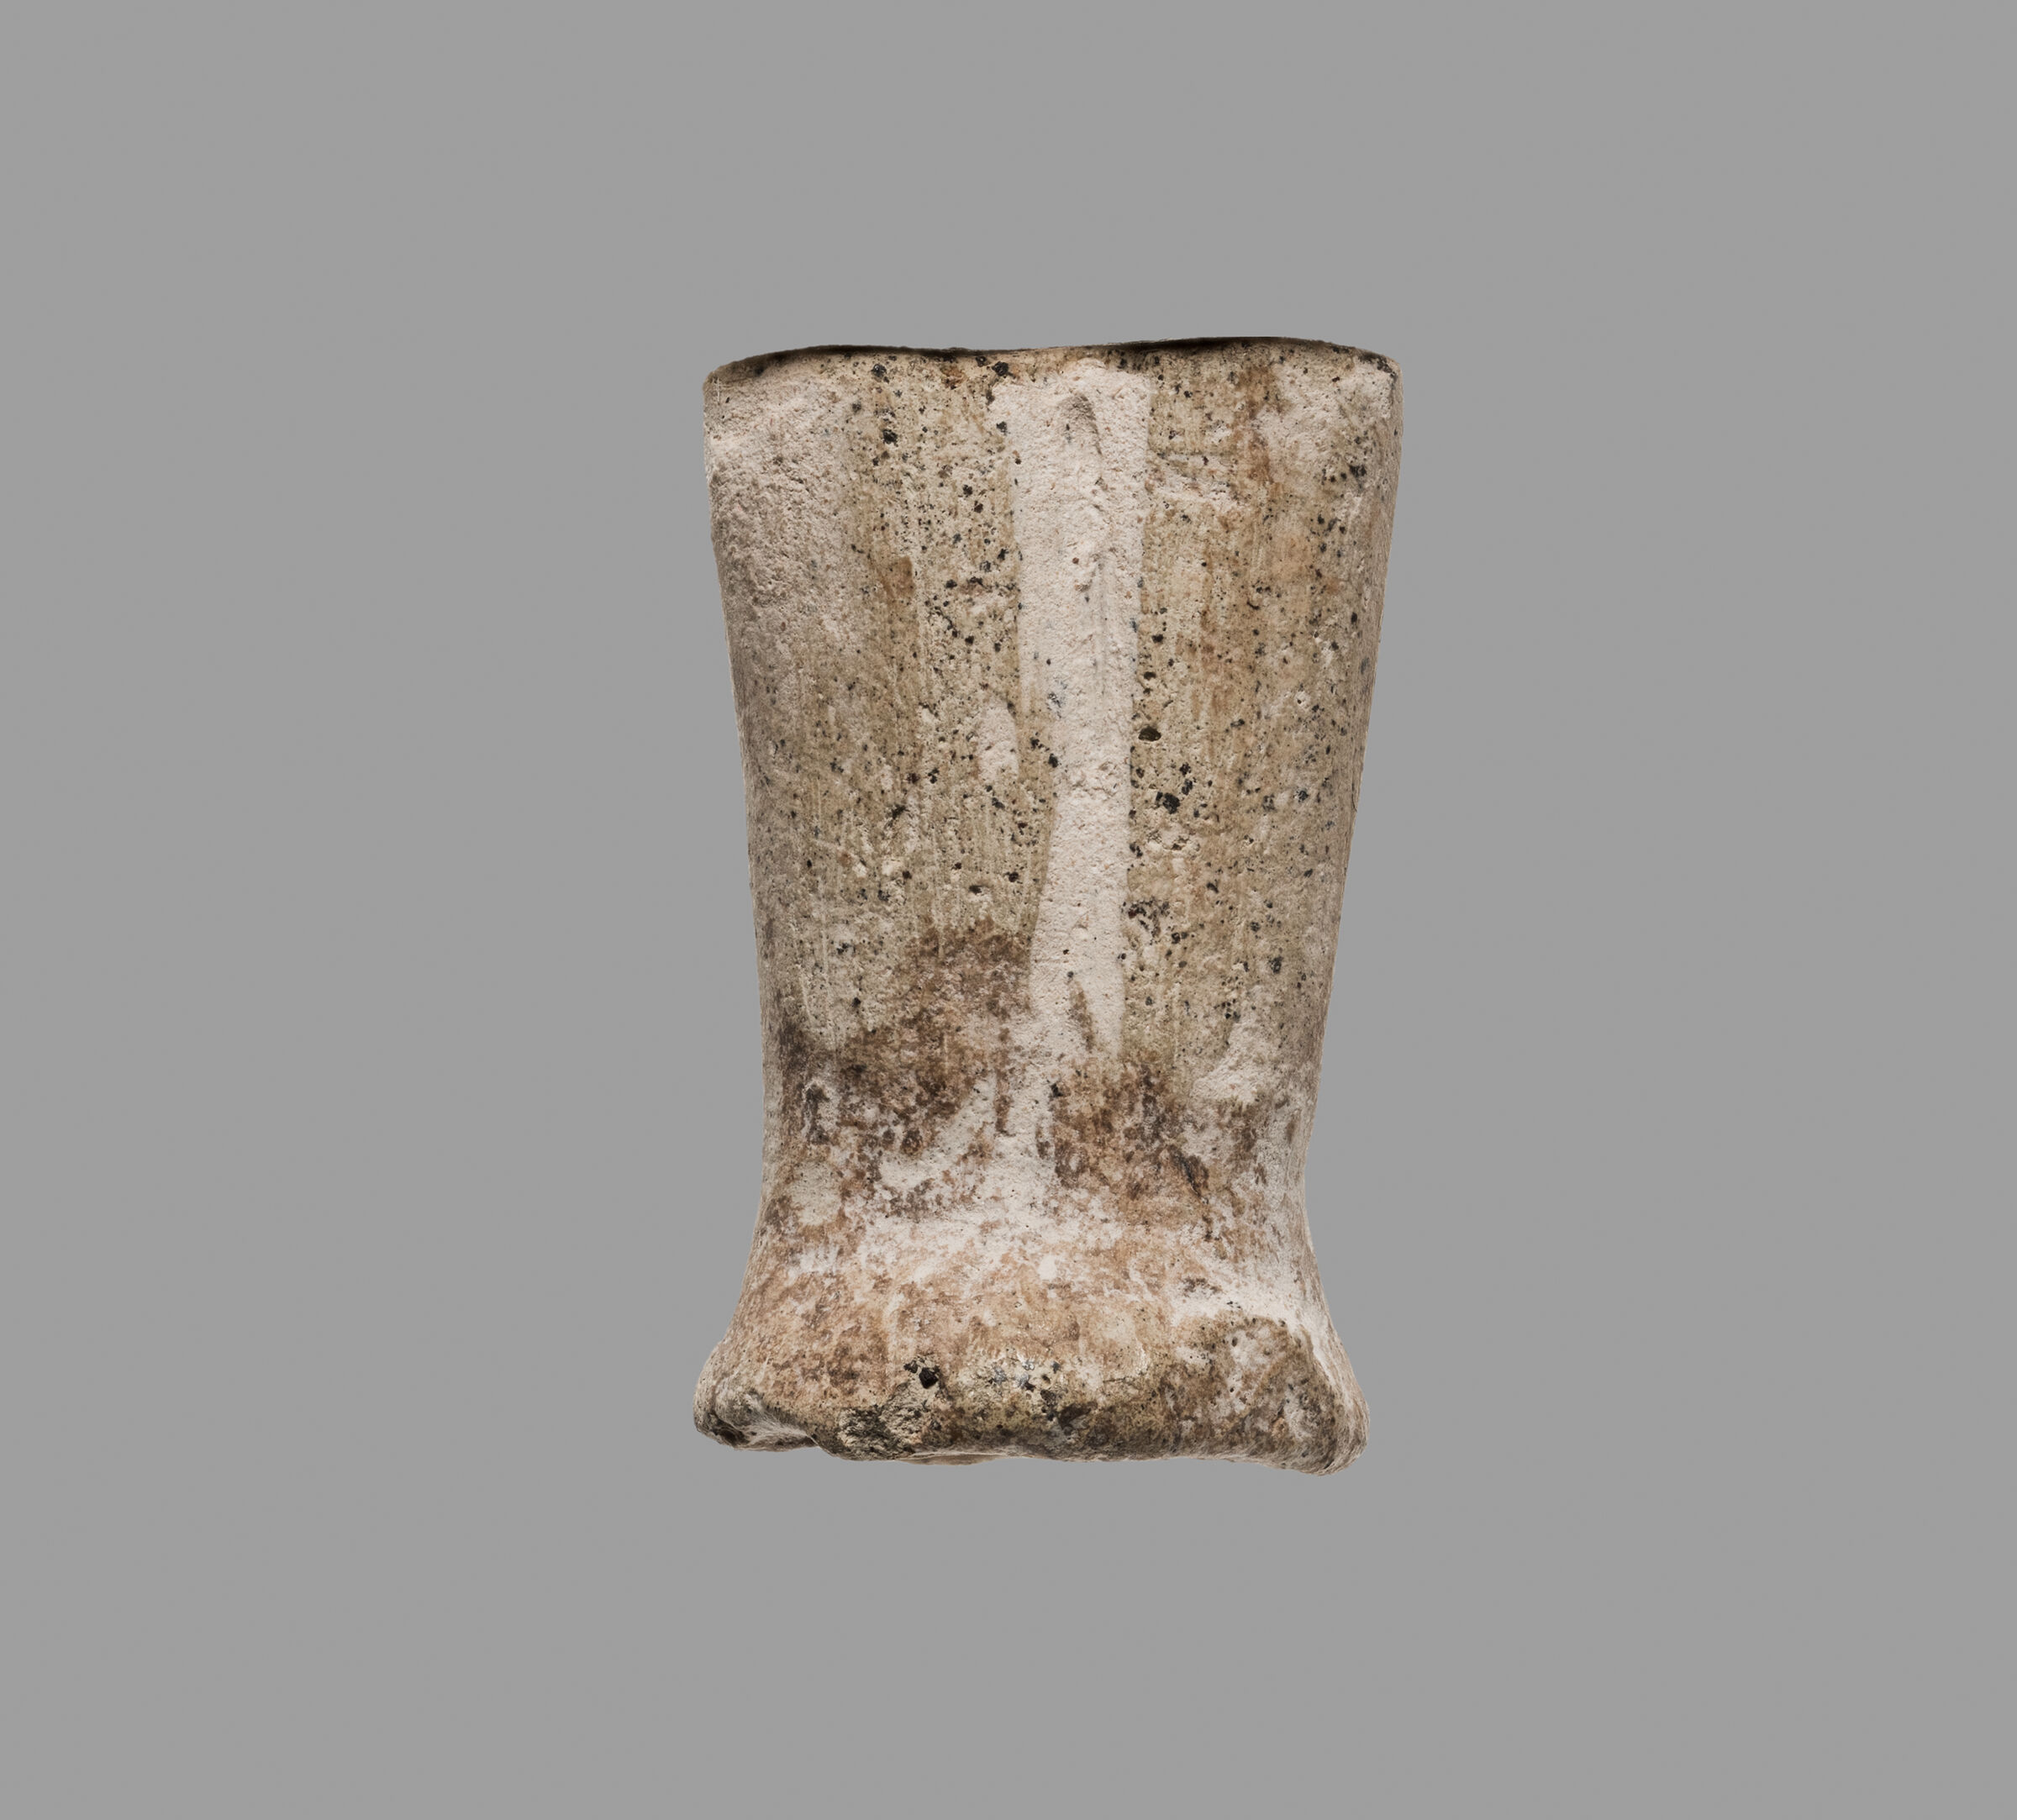 Anthropomorphic Female Figurine Fragment: Legs